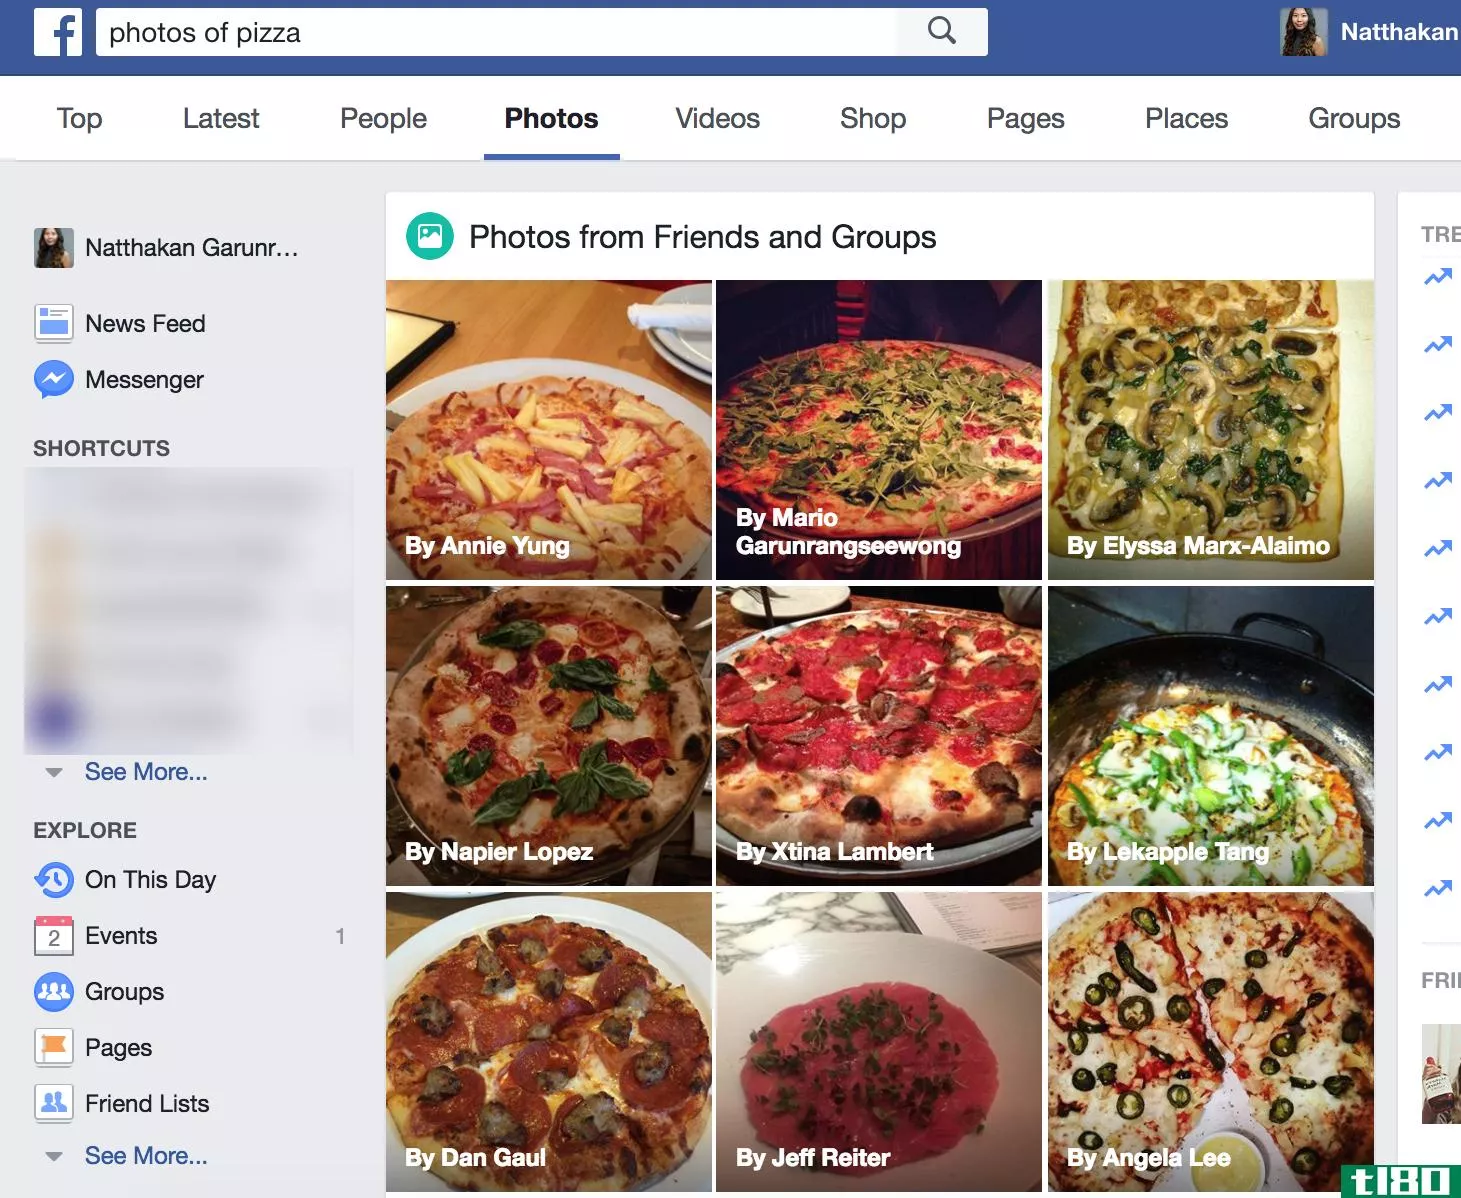 facebook的人工智能现在可以让你通过照片的内容来搜索照片